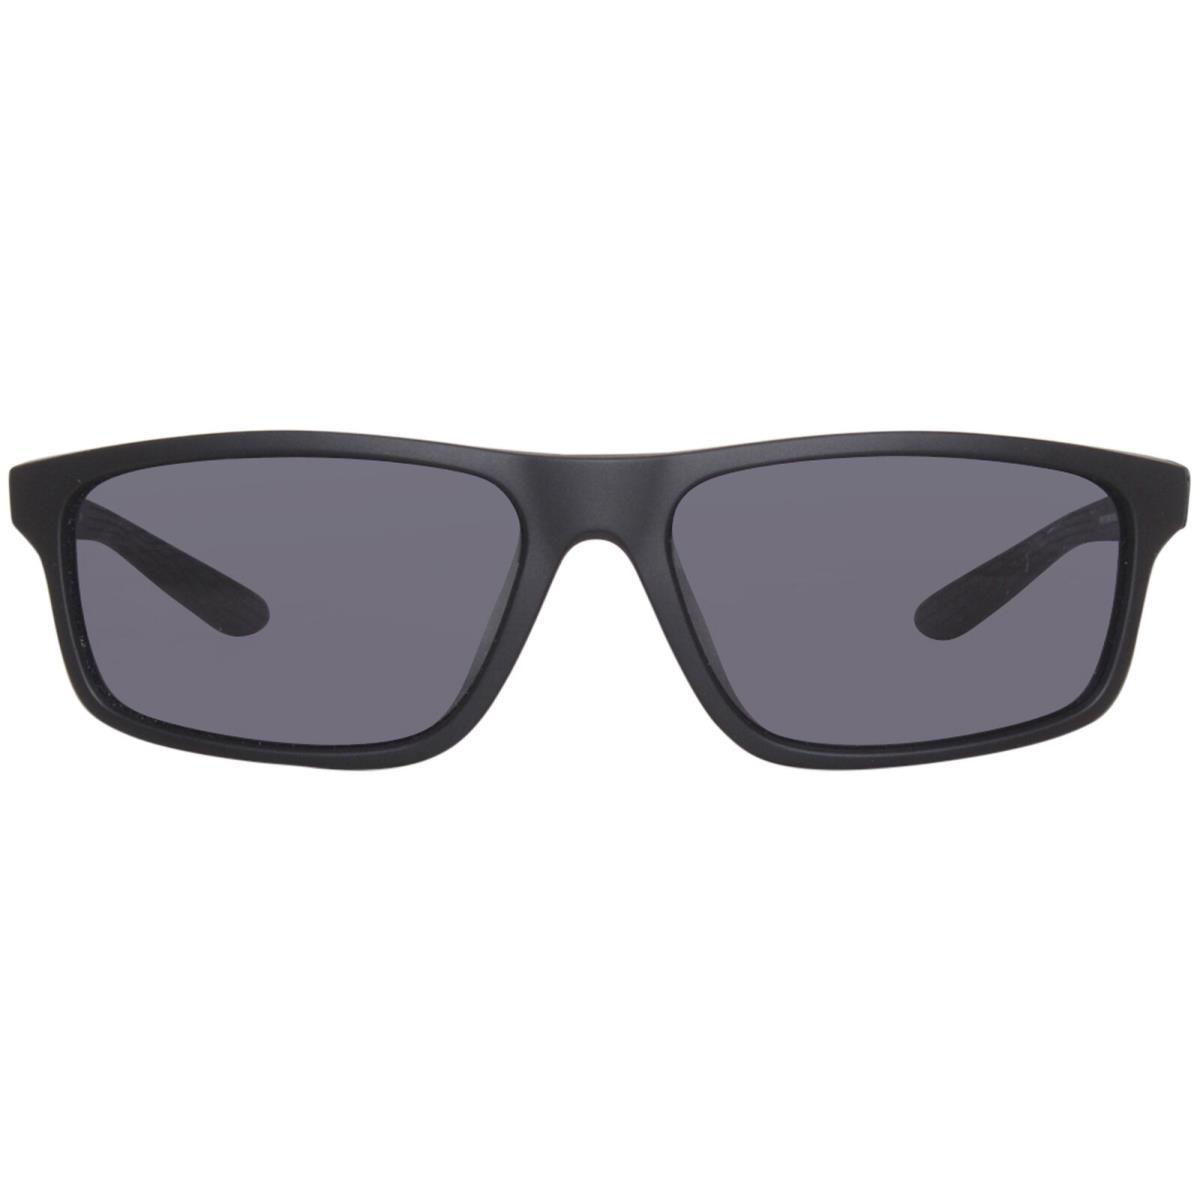 Nike Chronicle FJ216 010 Sunglasses Matte Black/dark Grey Rectangle Shape 59mm - Frame: Black, Lens: Gray